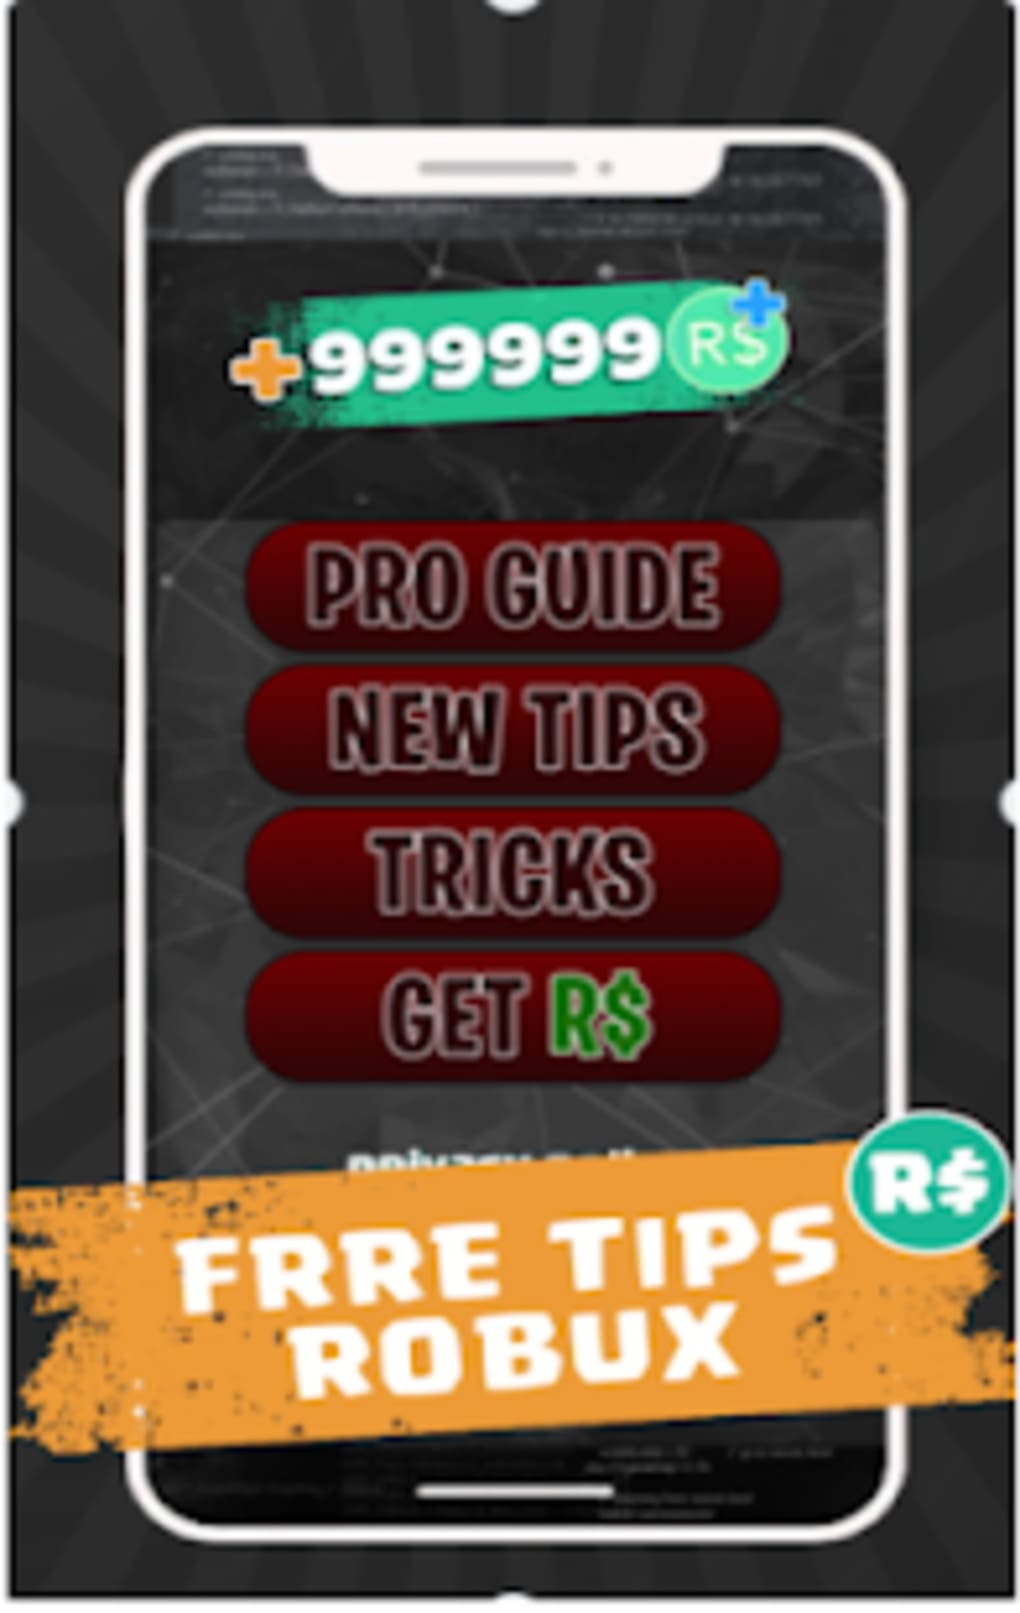 Daily Free Robux Tips Tricks Robux 2k19 For Android Download - free robux 2k19 new tips to get robux free 10 apk com